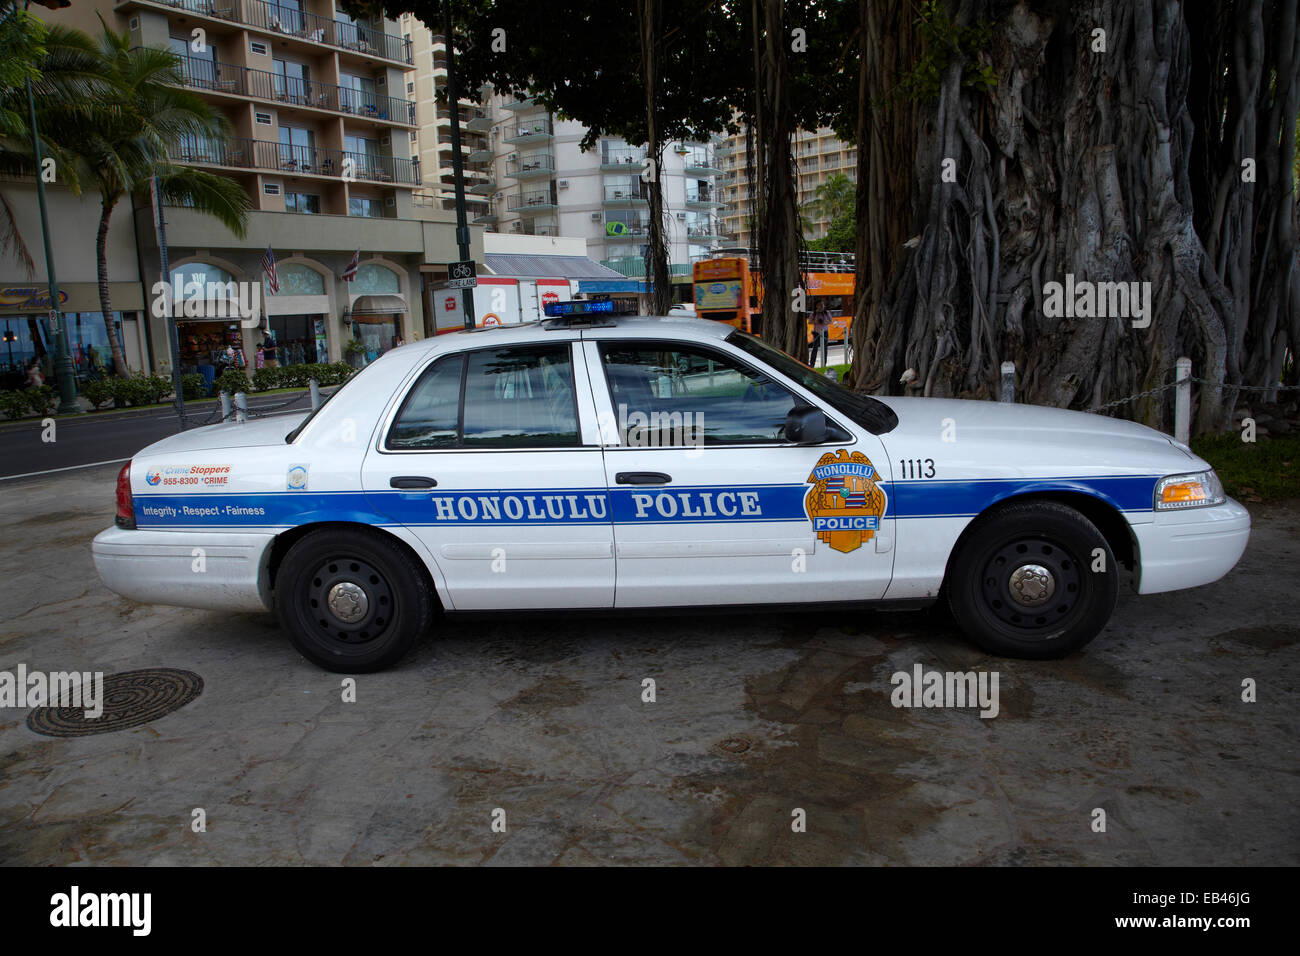 Honolulu Police car, Waikiki, Honolulu, Oahu, Hawaii, USA Stock Photo